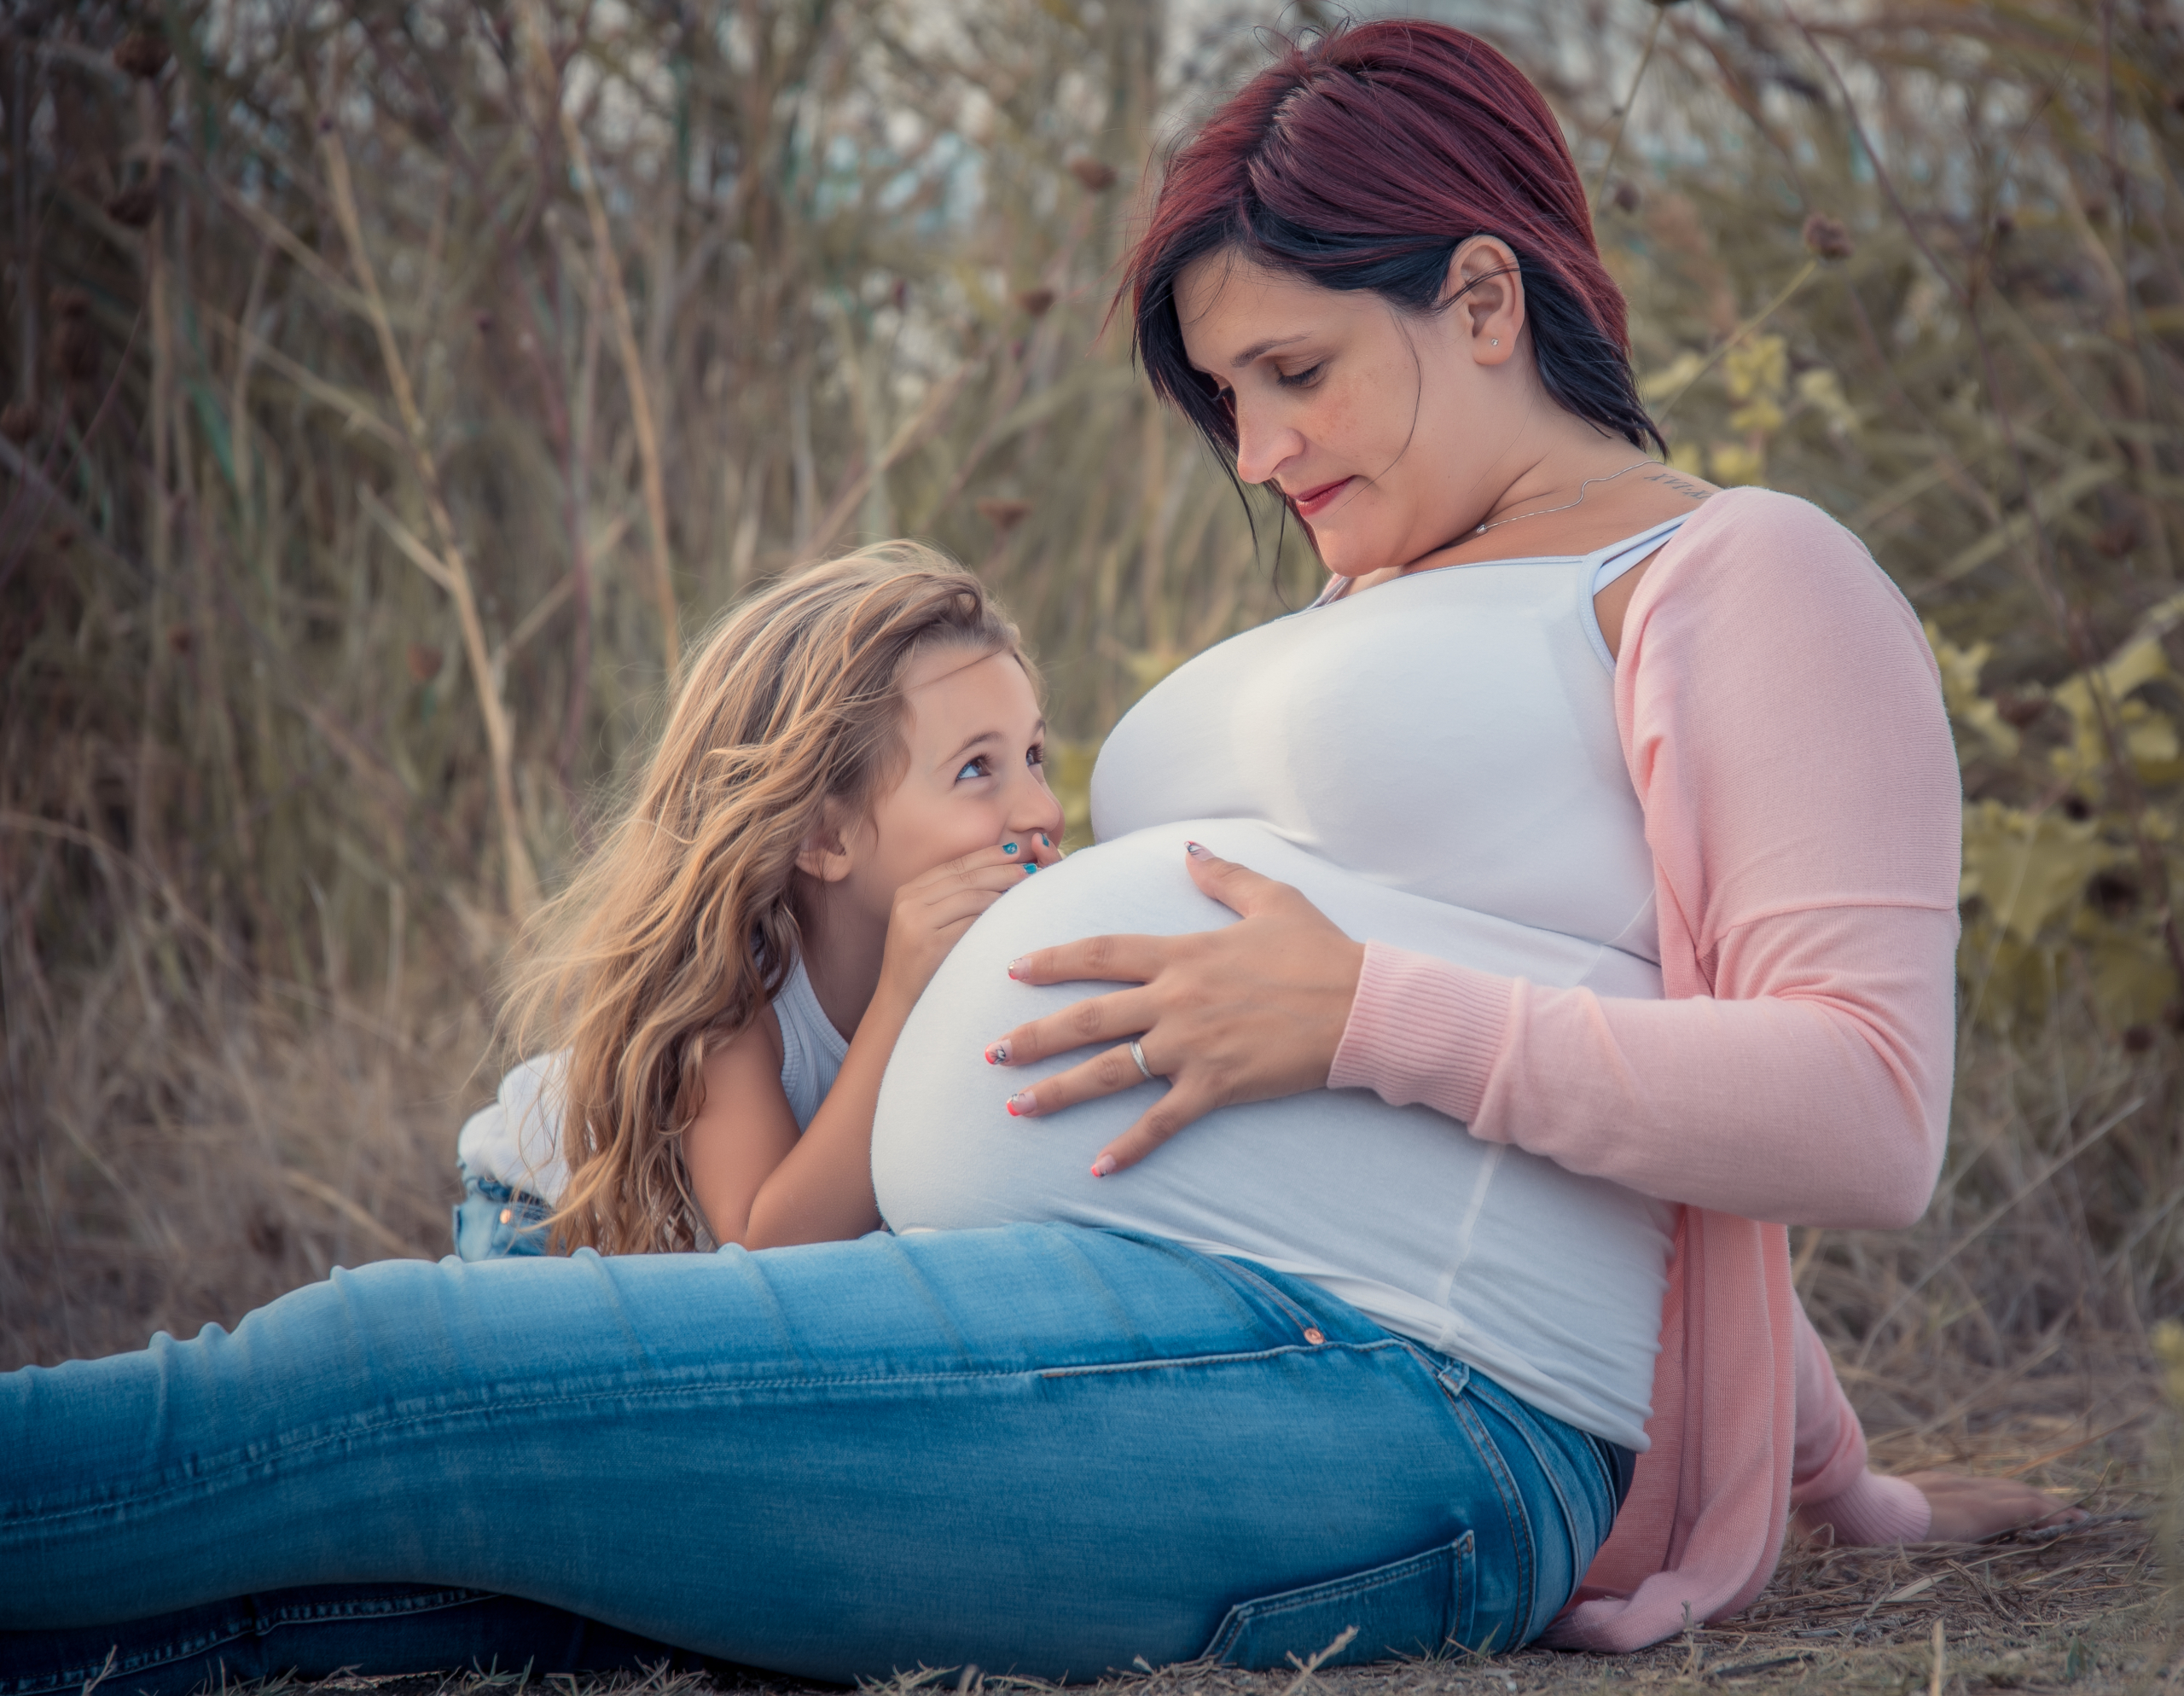 photo d'une femme enceinte sur laquelle on voit une petite fille chuchoter un mot au ventre de sa maman